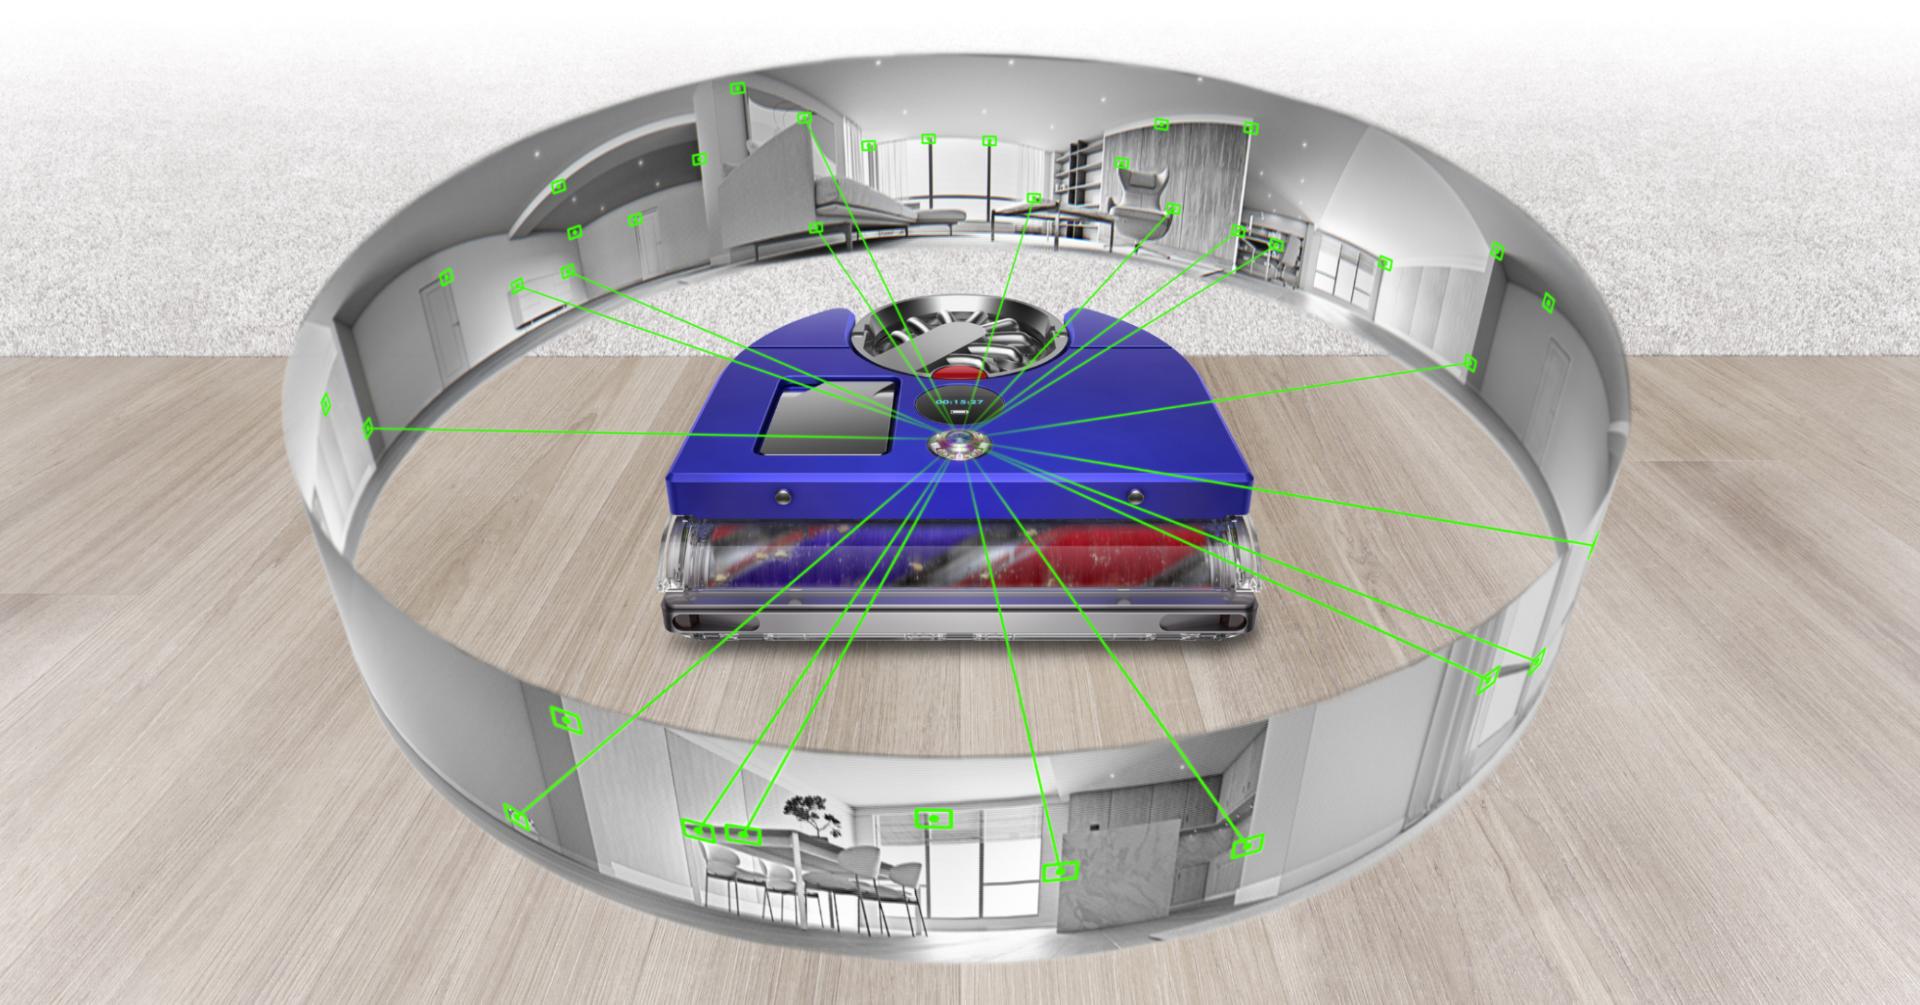 wizualizacja systemu wizyjnego 360 stopni robota sprzątającego Dyson 360 Vis Nav